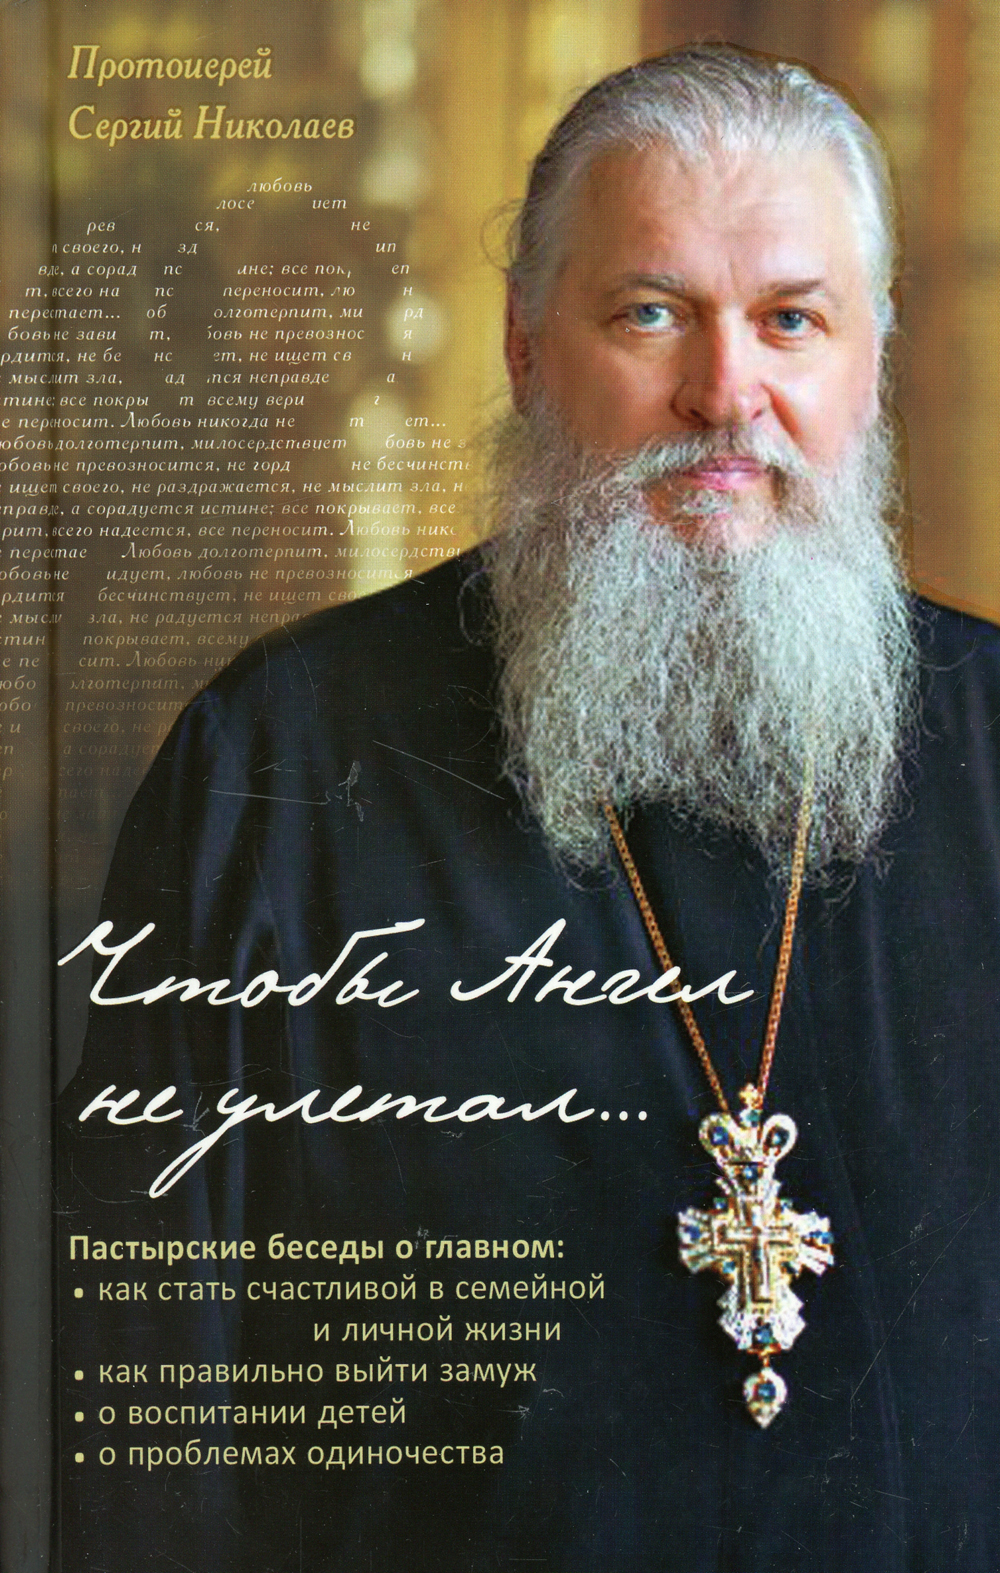 Какую награду получил писатель от православной церкви